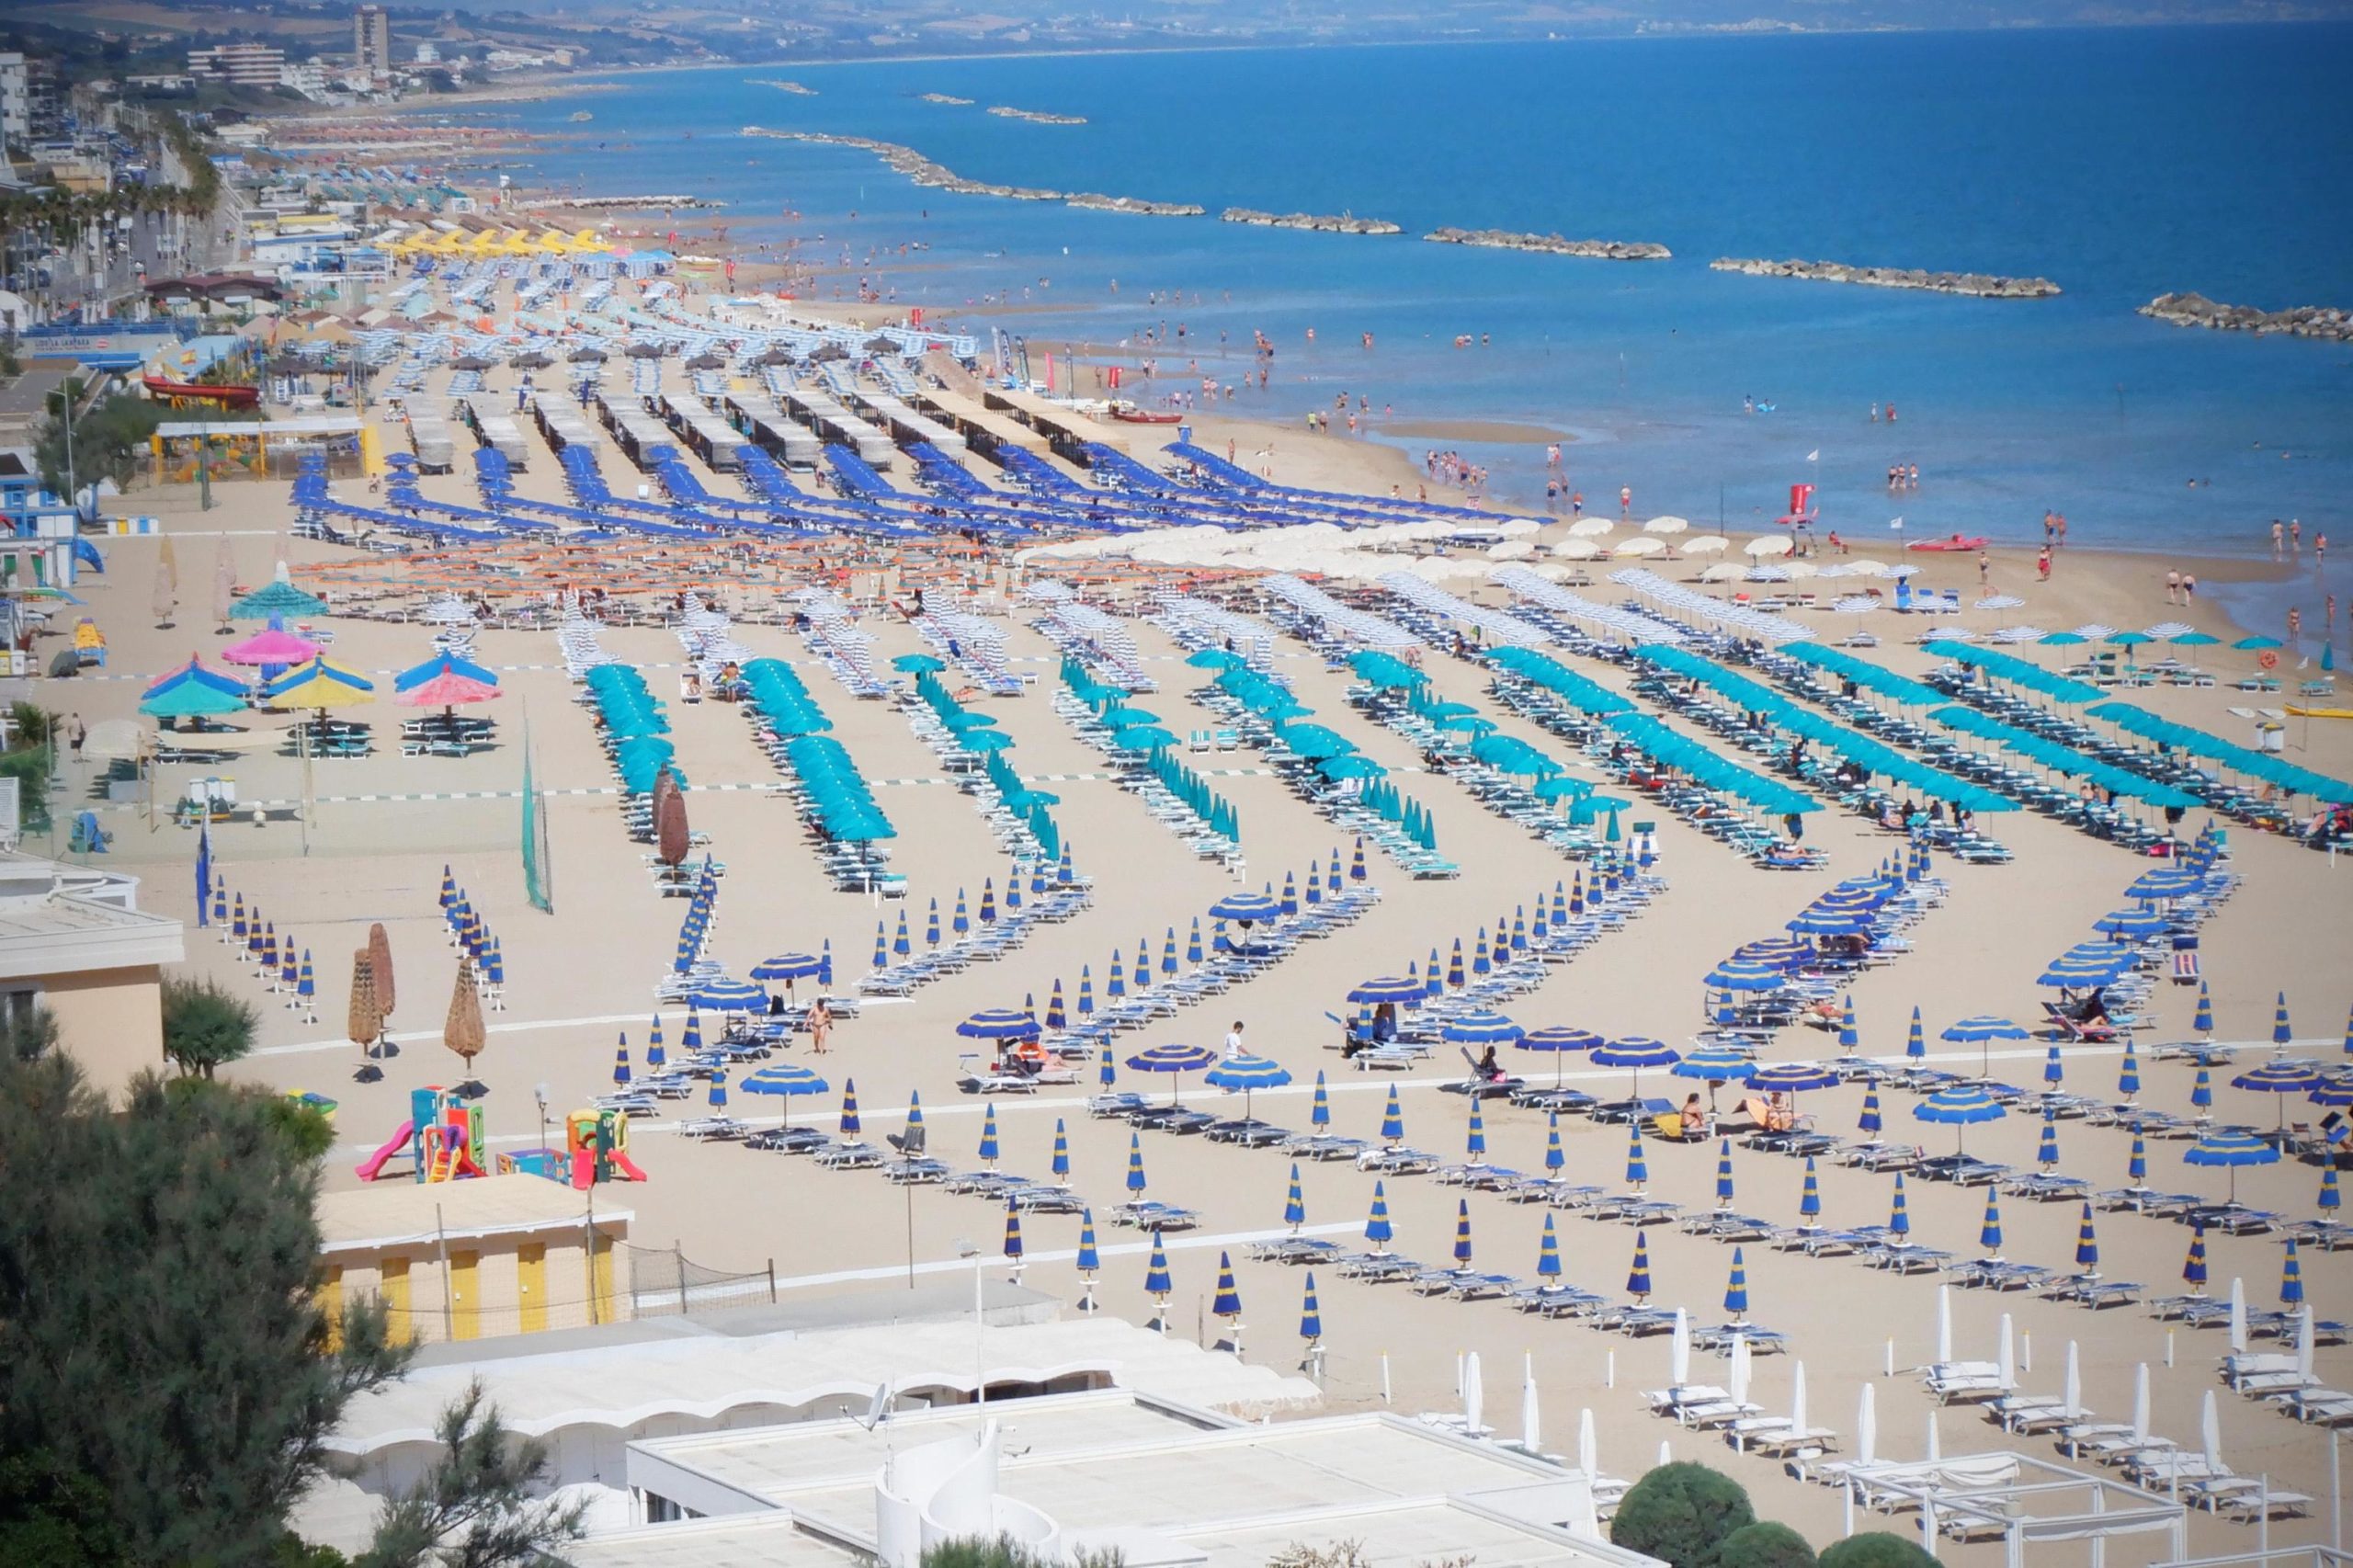 Termoli (Campobasso) mare Adriatico, ombrelloni e stabilimenti balneari sulla riviera adriatica e la spiaggia
GIUSEPPE GIGLIA/ANSA